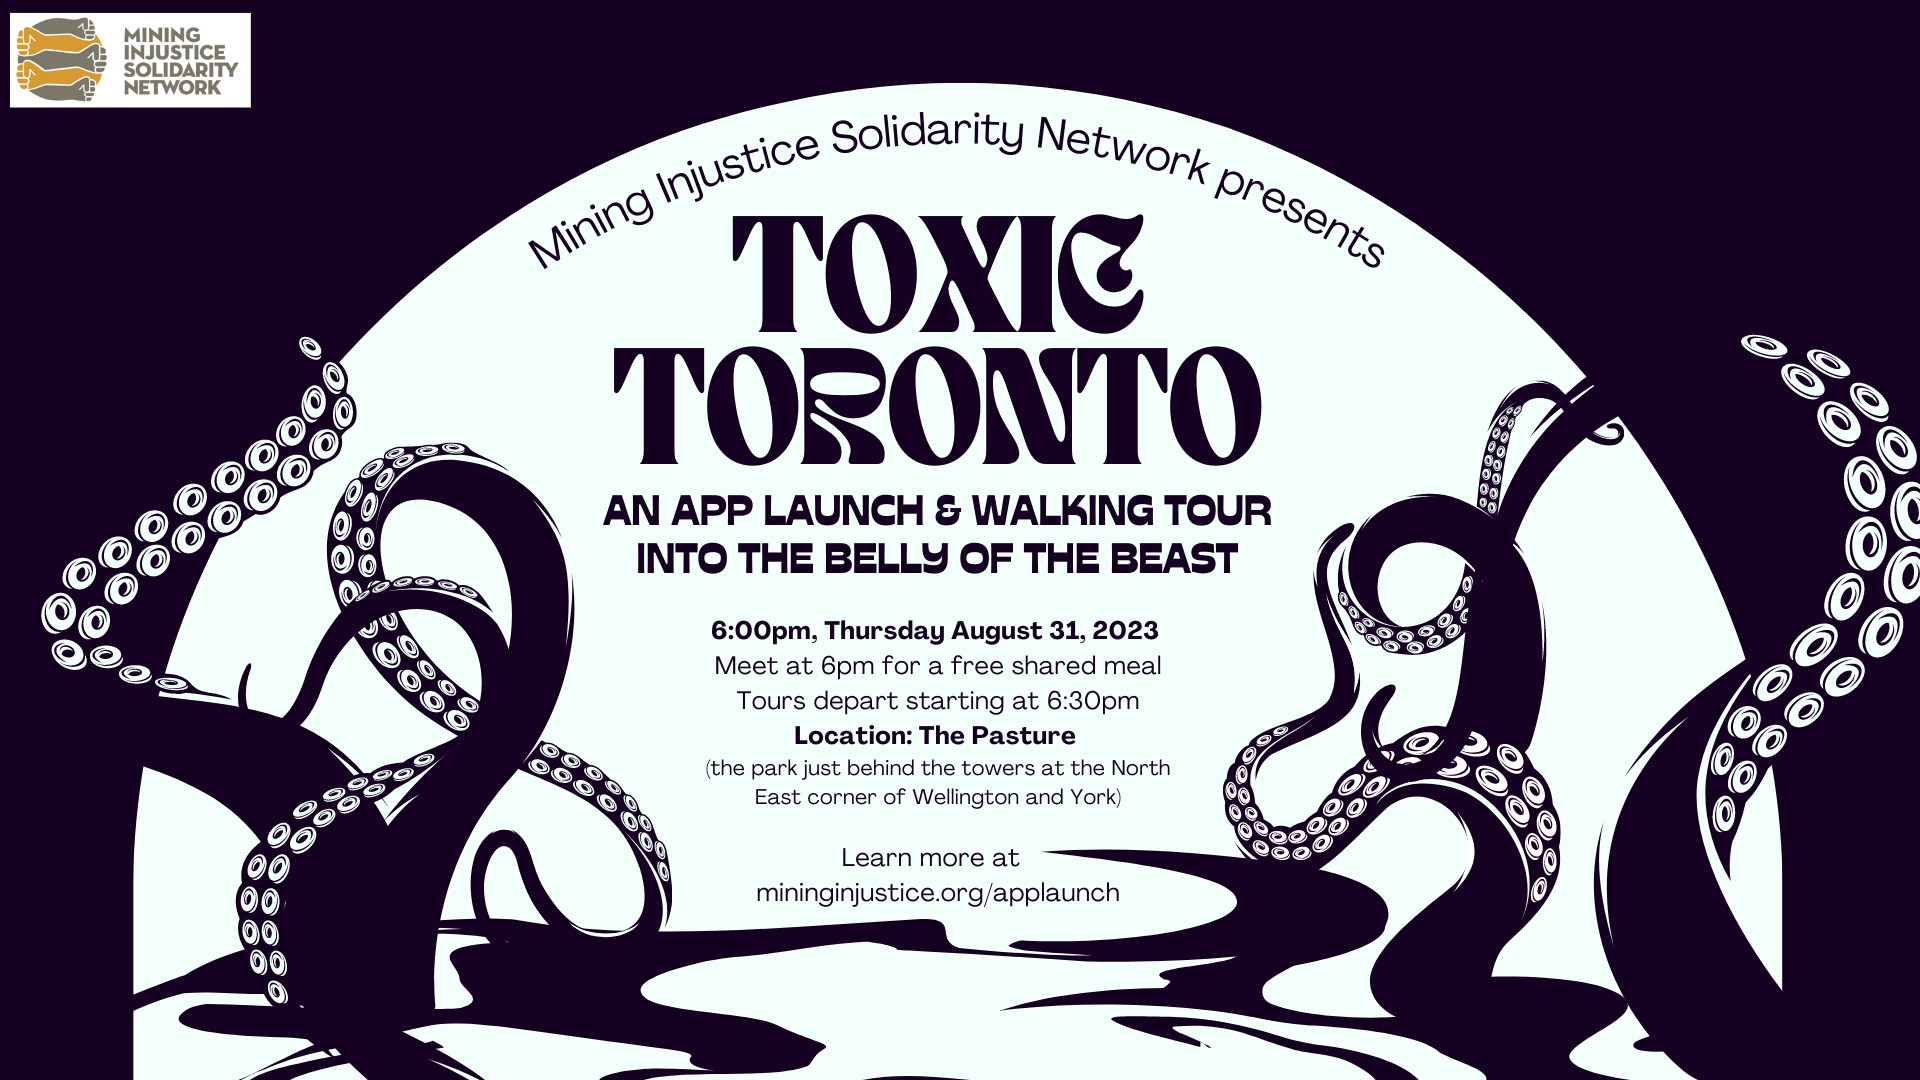 Toxic Tours - Virtual Toxic Tours